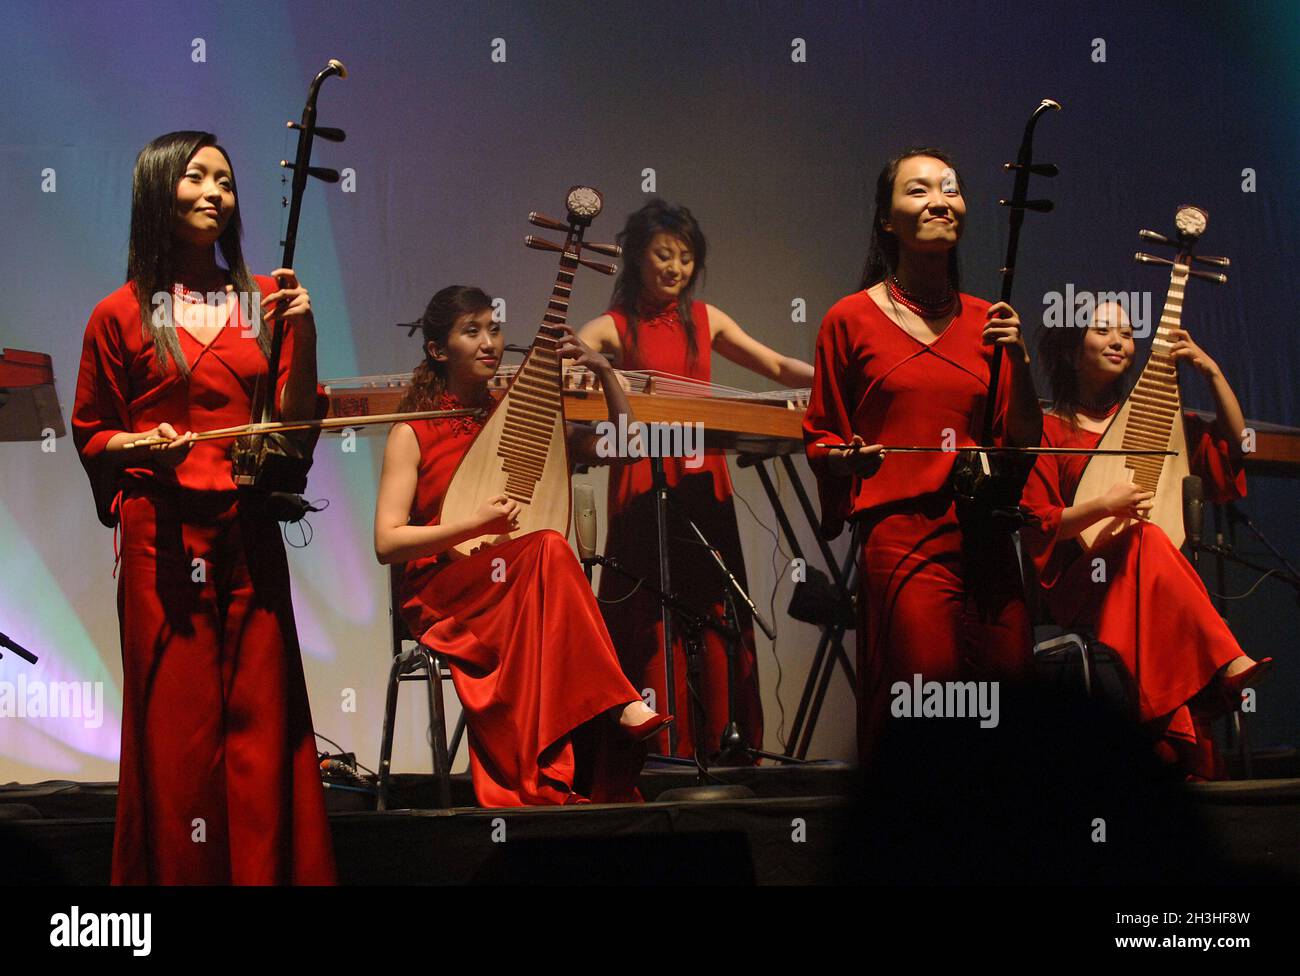 20 TwelfeGirlsBand  10/30/2005. The Twelfe Girls Band Konzert in Los Angeles Twelve Girls Band (???????? ,?????? ,???????) Ist eine Musikgruppe mit dreizehn Künstlerinnen, die immer als zwölf auf der Bühne auftreten und traditionelle chinesische Instrumente verwenden, um sowohl traditionelle chinesische als auch westliche Lieder zu spielen. Die Mädchen, die am 18. Juni 2001 gegründet wurden, wurden durch Vorsprechen von über 4000 Teilnehmern ausgewählt, die alle an renommierten Schulen in der Volksrepublik China (China) studierten. Sie sind in Japan (mit den höchsten Verkaufszahlen aller chinesischen Musikkünstler überhaupt), der VR China, Hongkong und abro sehr beliebt geworden Stockfoto